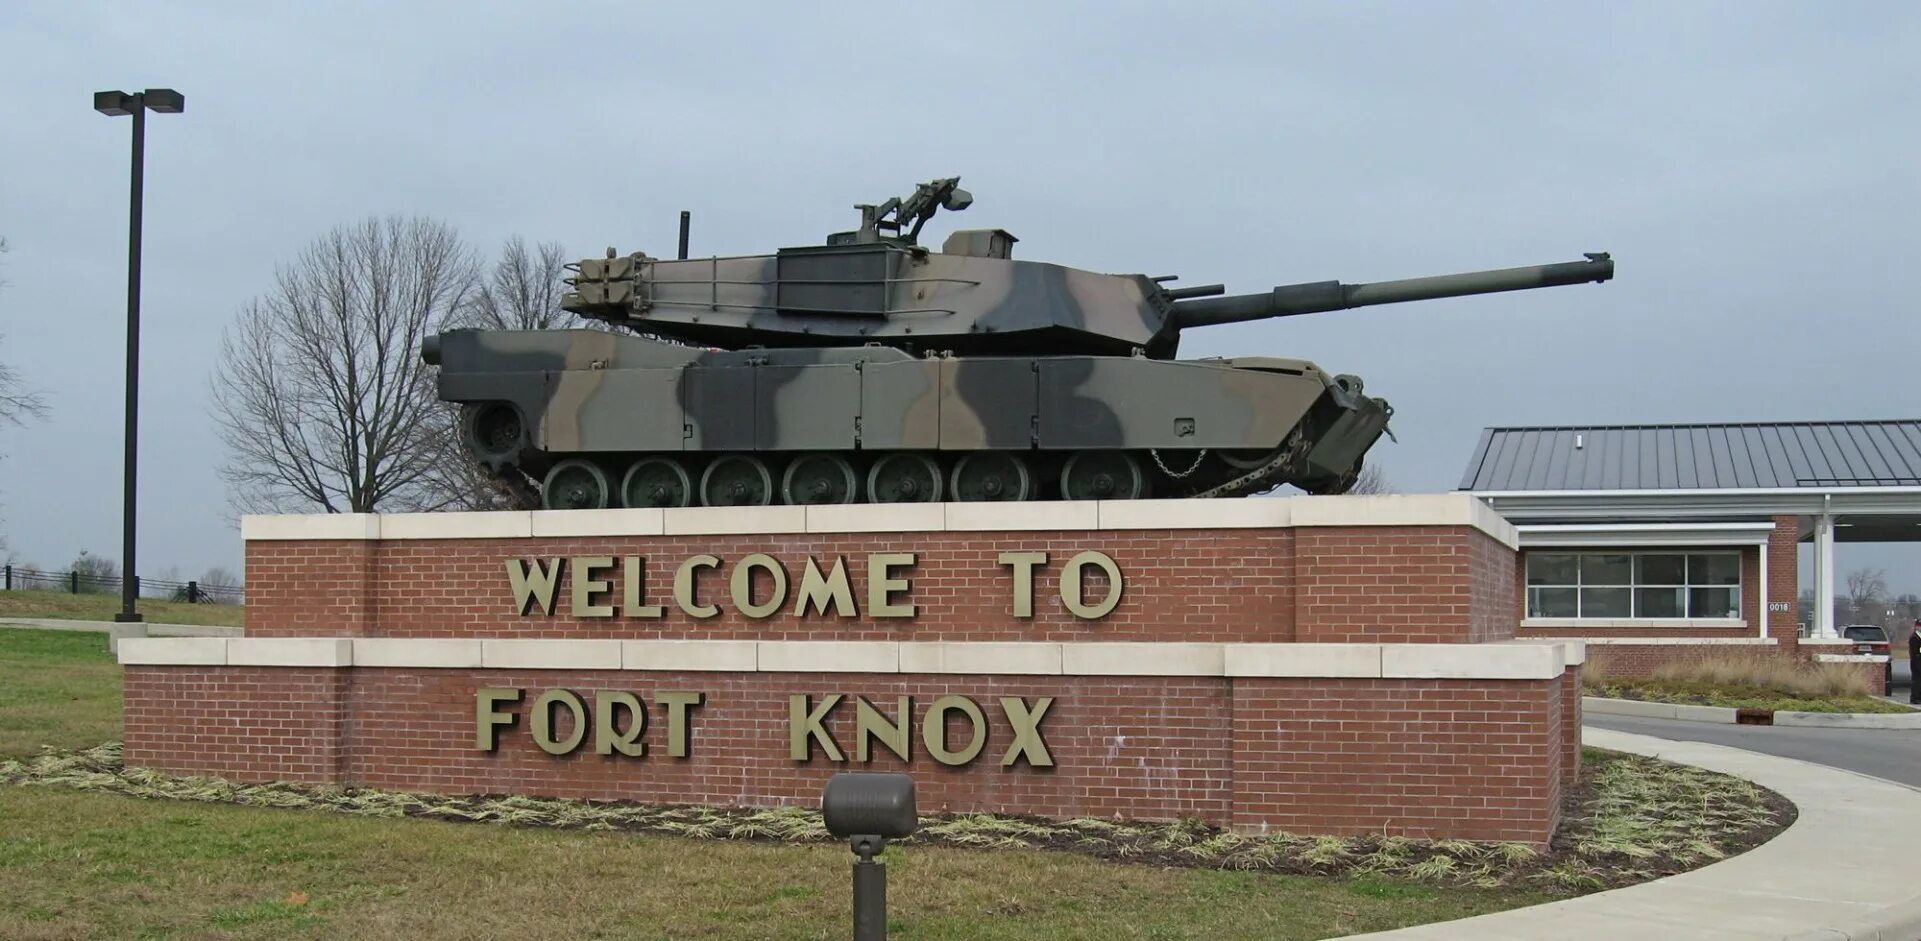 Fort knox. Форт-Нокс в Кентукки. Крепость Форт Нокс. Золотохранилище США Форт Нокс. База Форт Нокс.